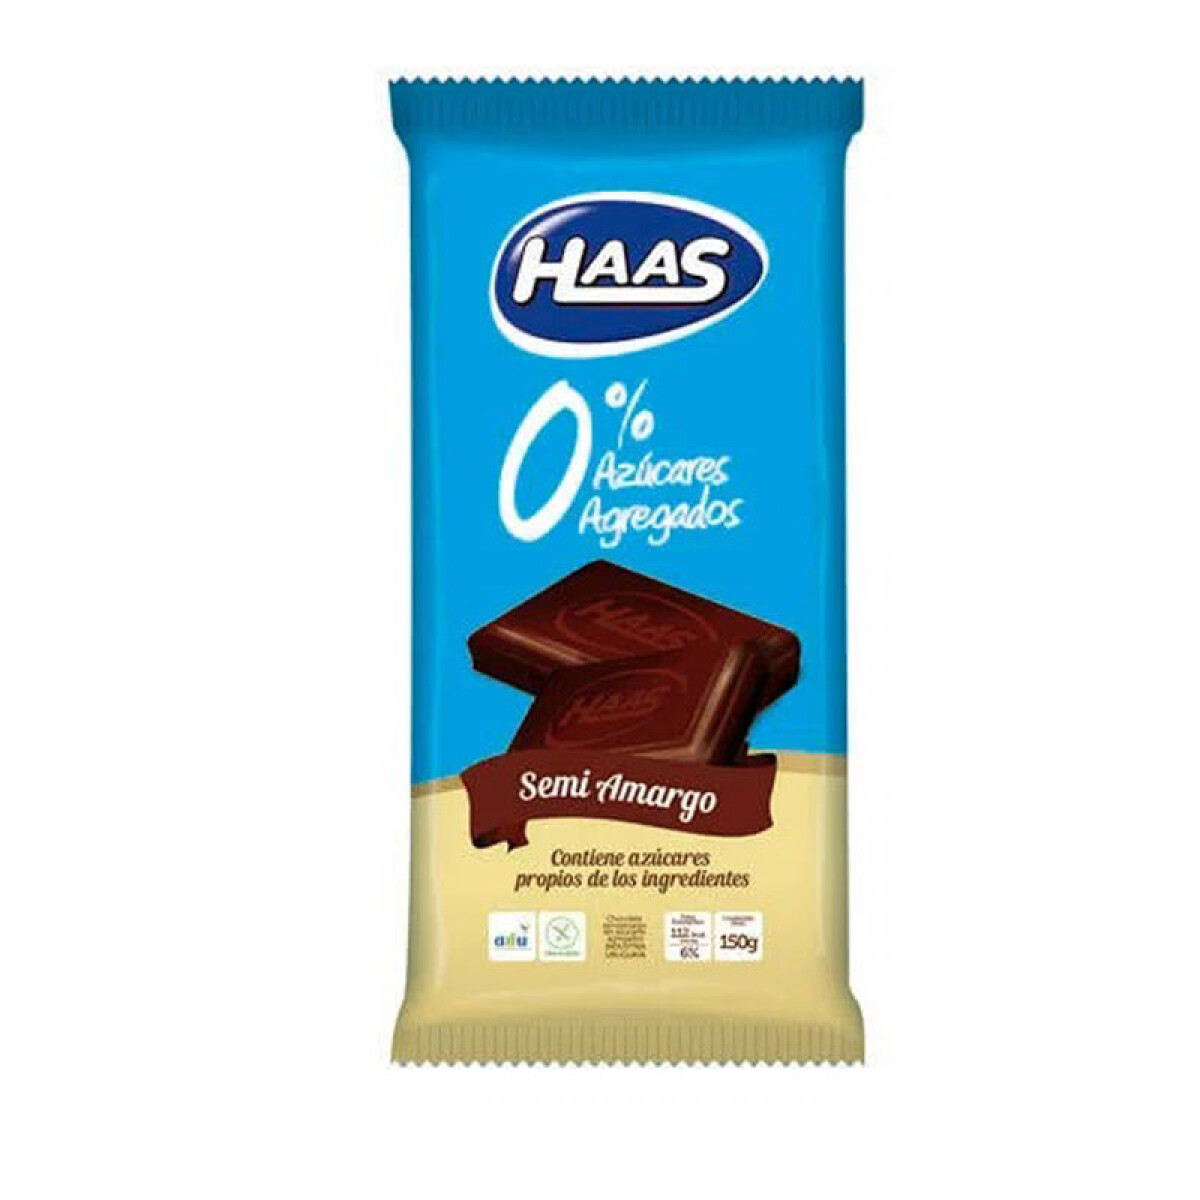 Chocolate HASS 0% Azúcar Tableta150Grs - Semi amargo 